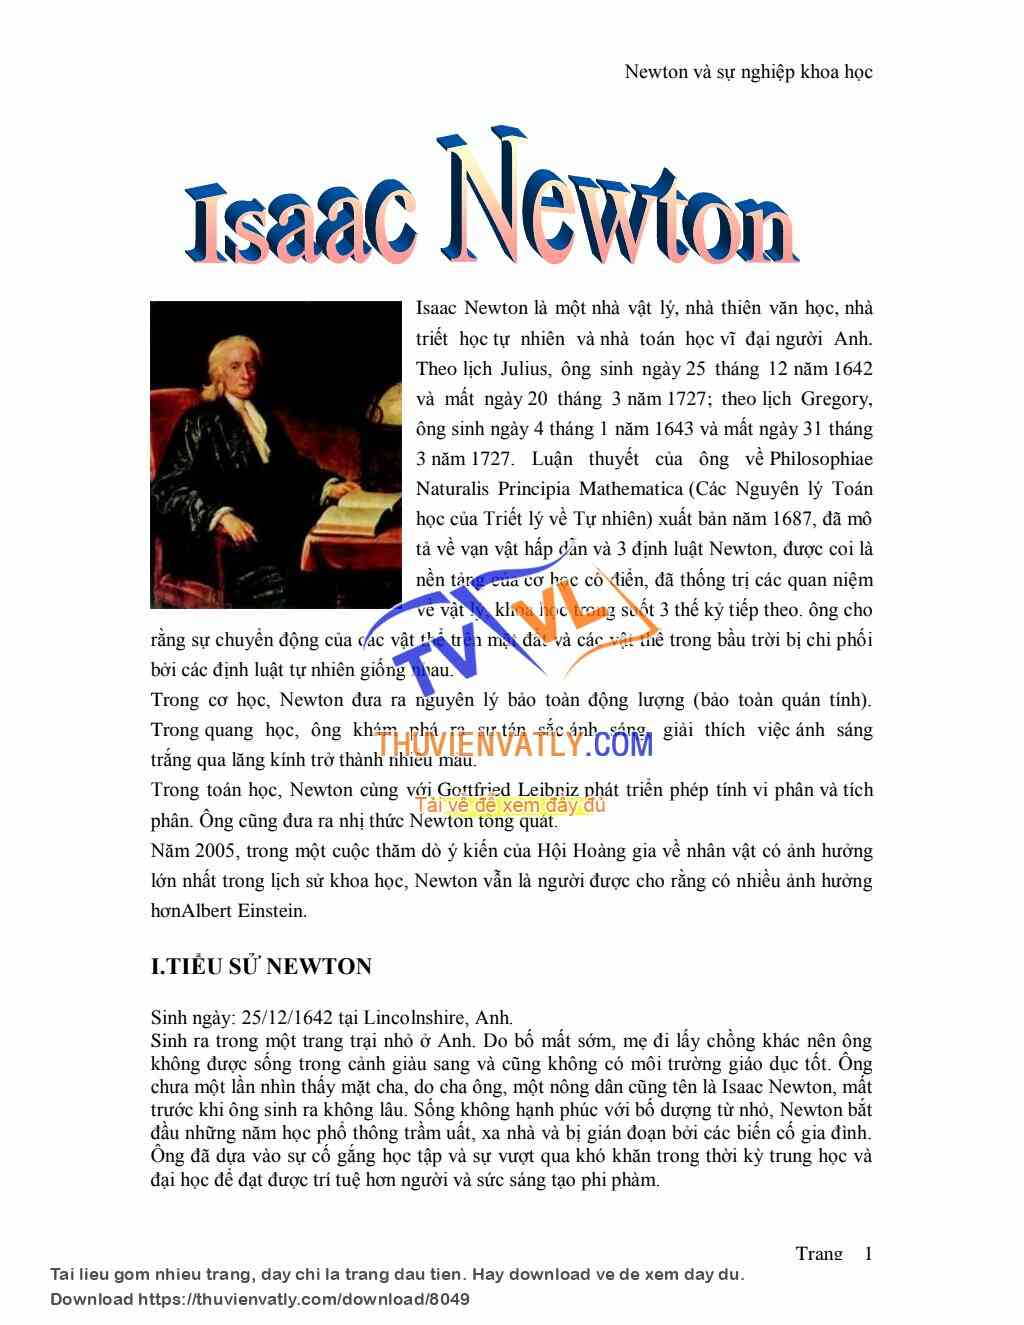 Isaac Newton và sự nghiệp khoa học